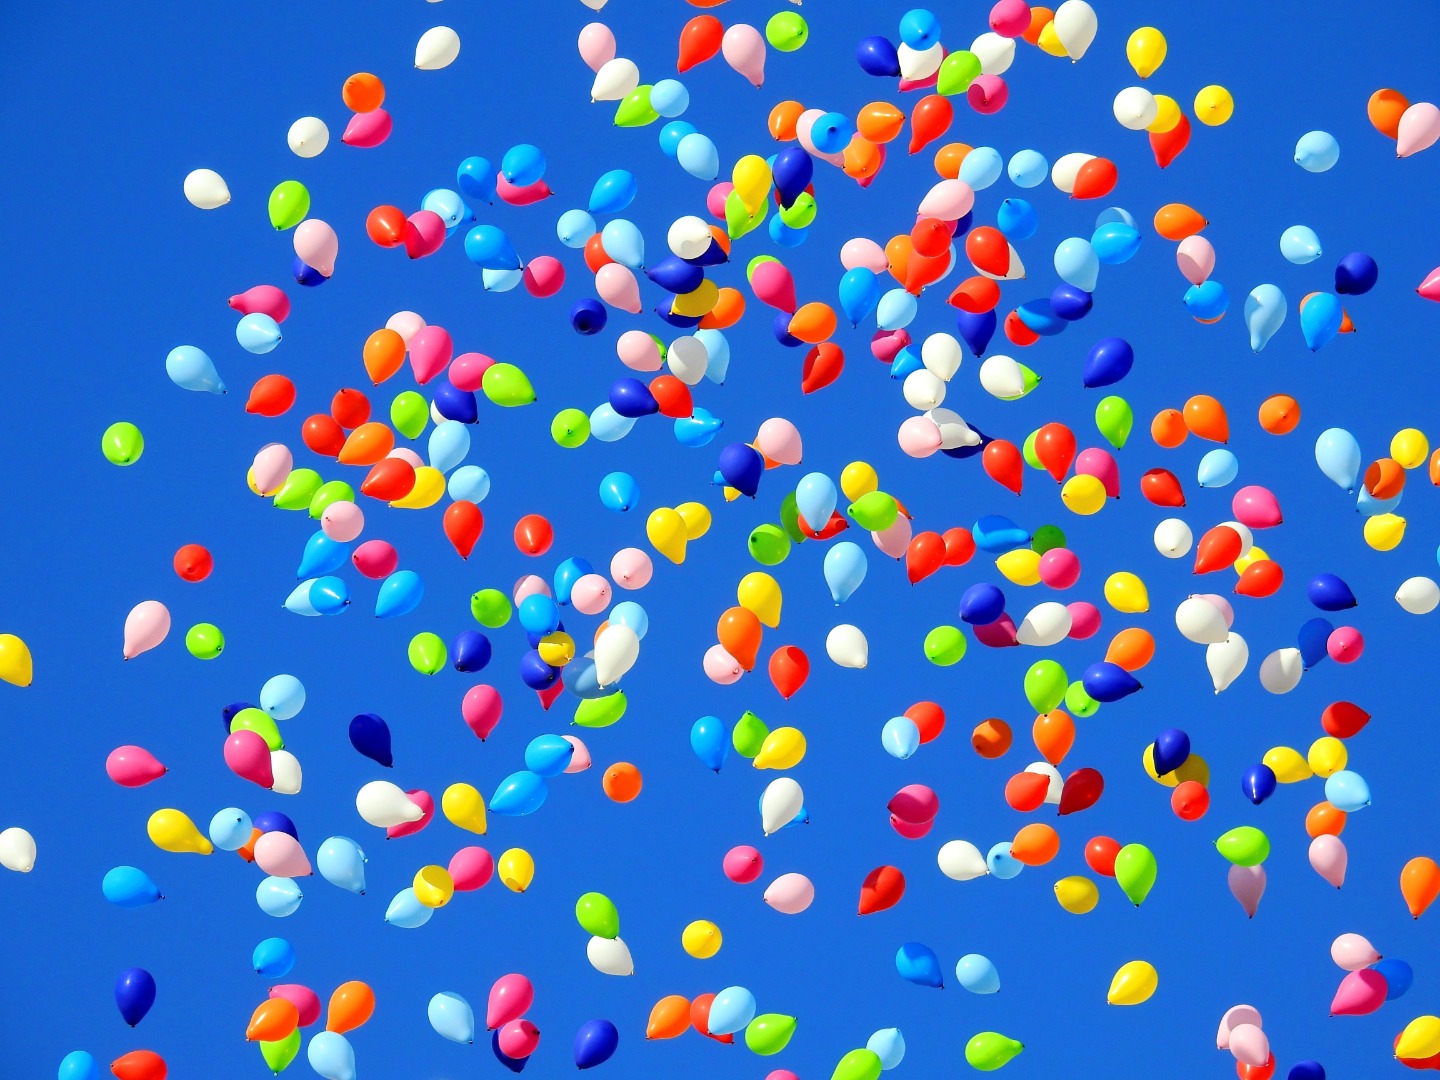 Rüyada balon görmek ne anlama geliyor?